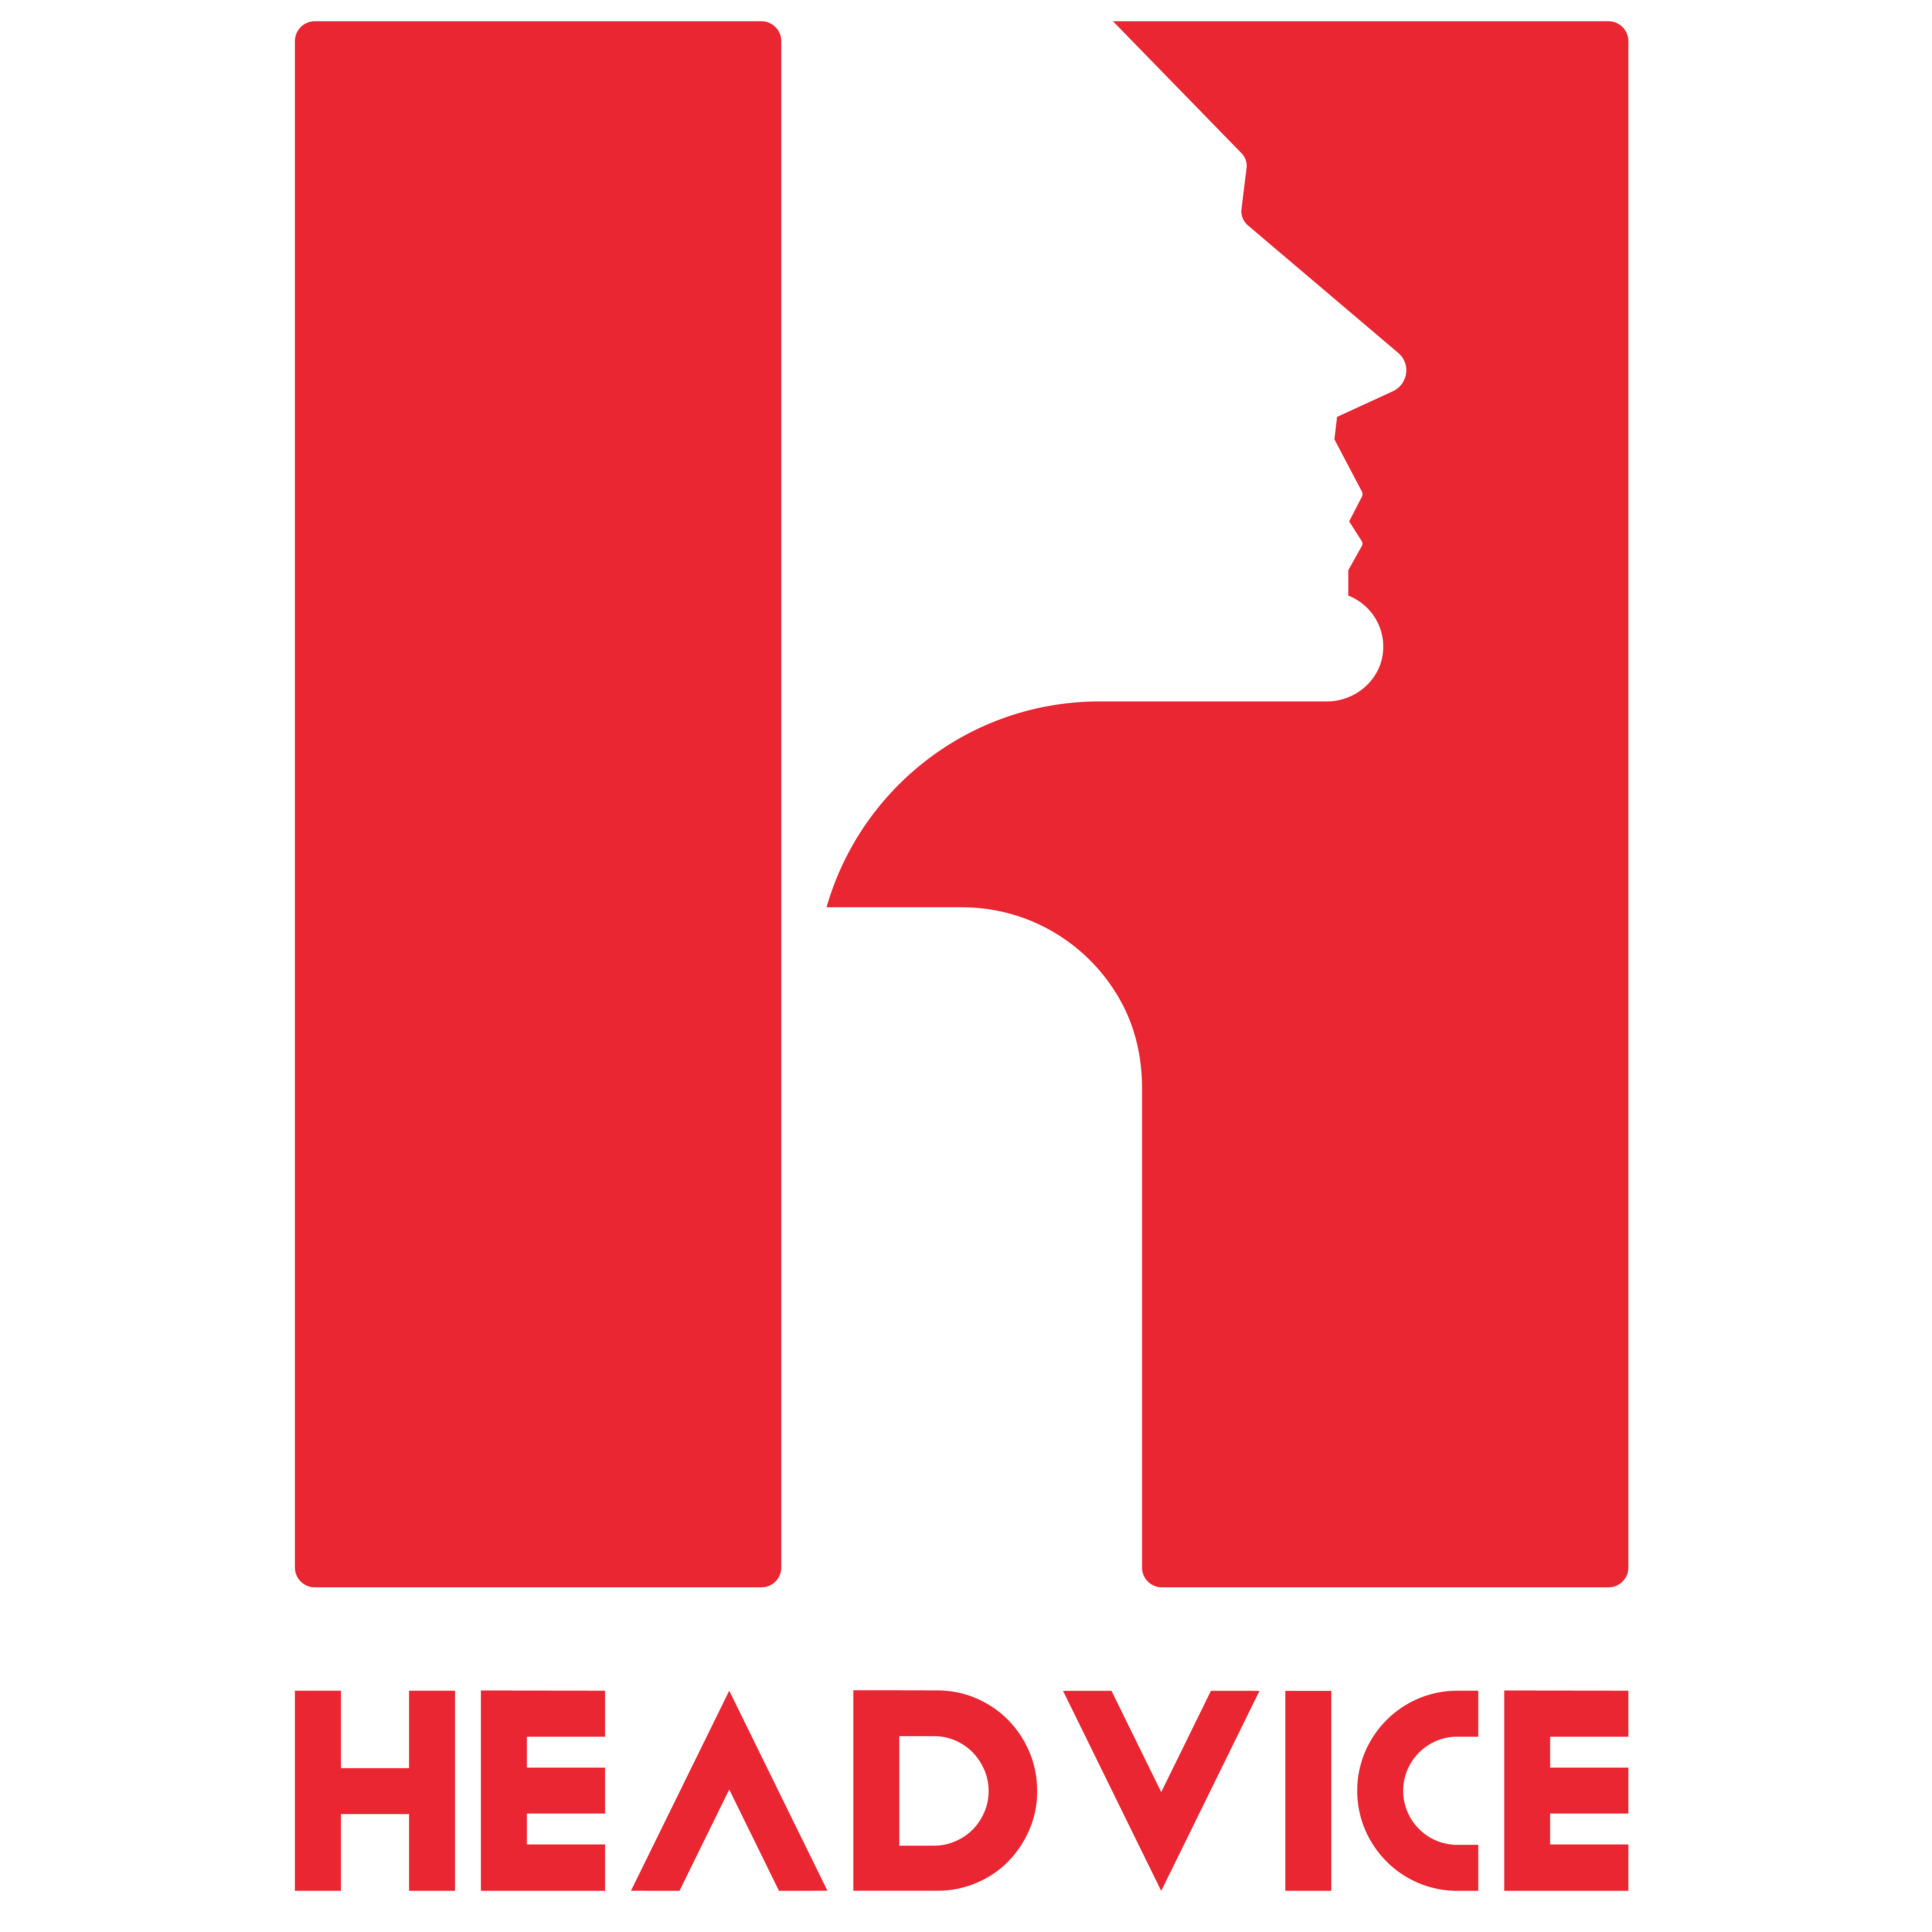 Headvice